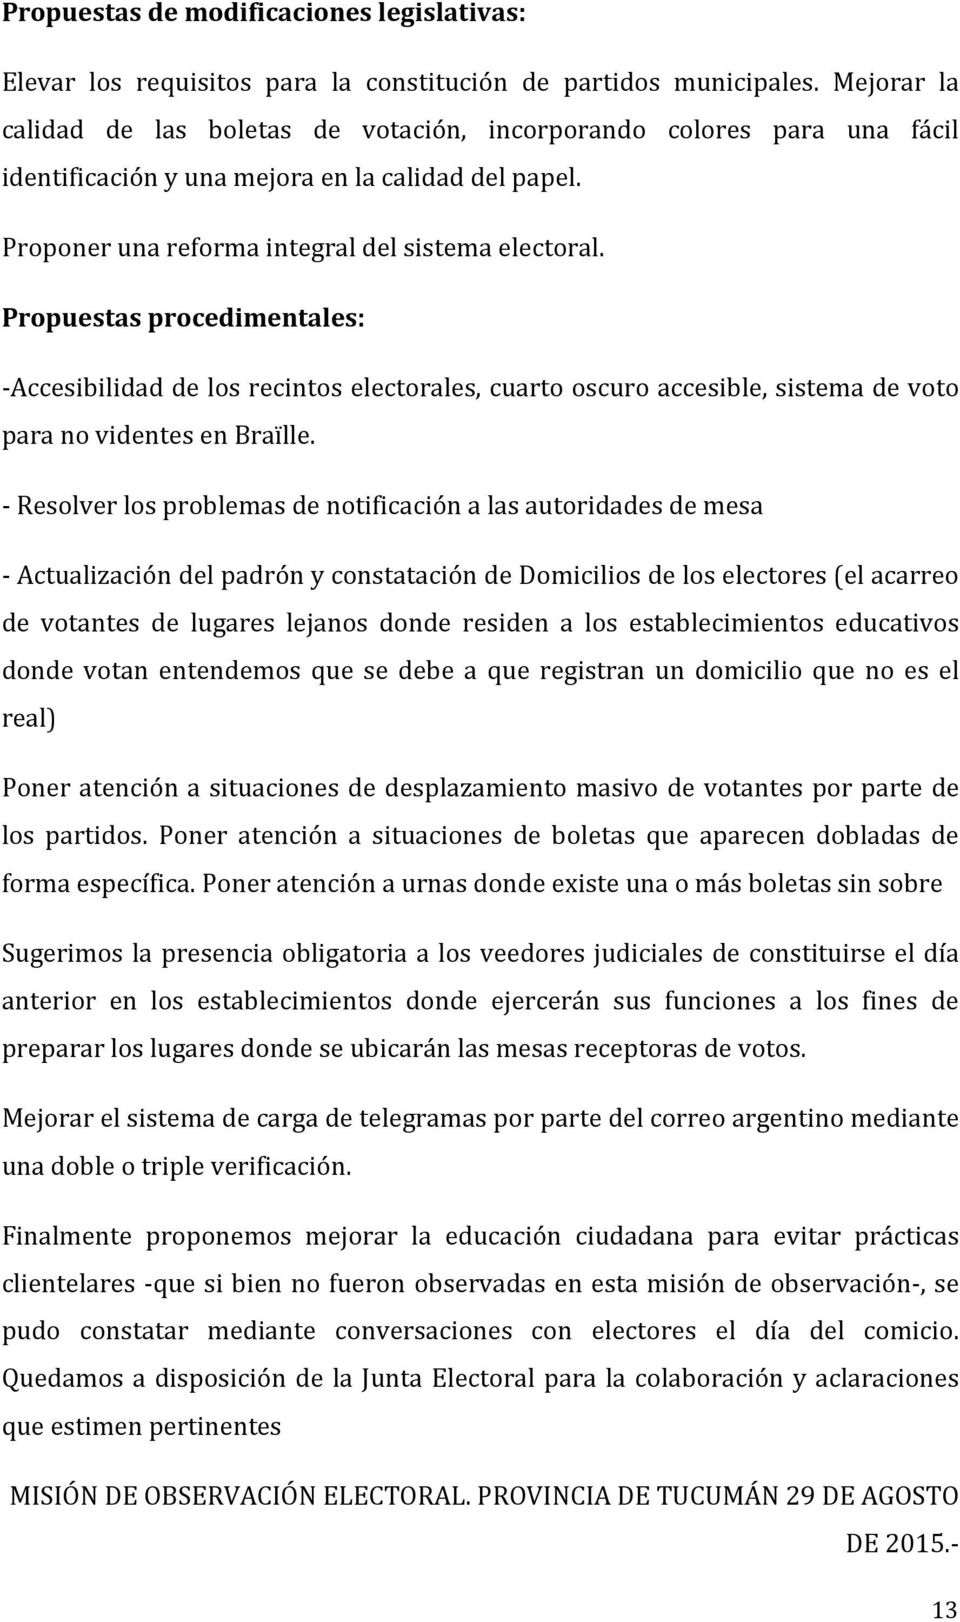 Propuestas procedimentales: -Accesibilidad de los recintos electorales, cuarto oscuro accesible, sistema de voto para no videntes en Braïlle.